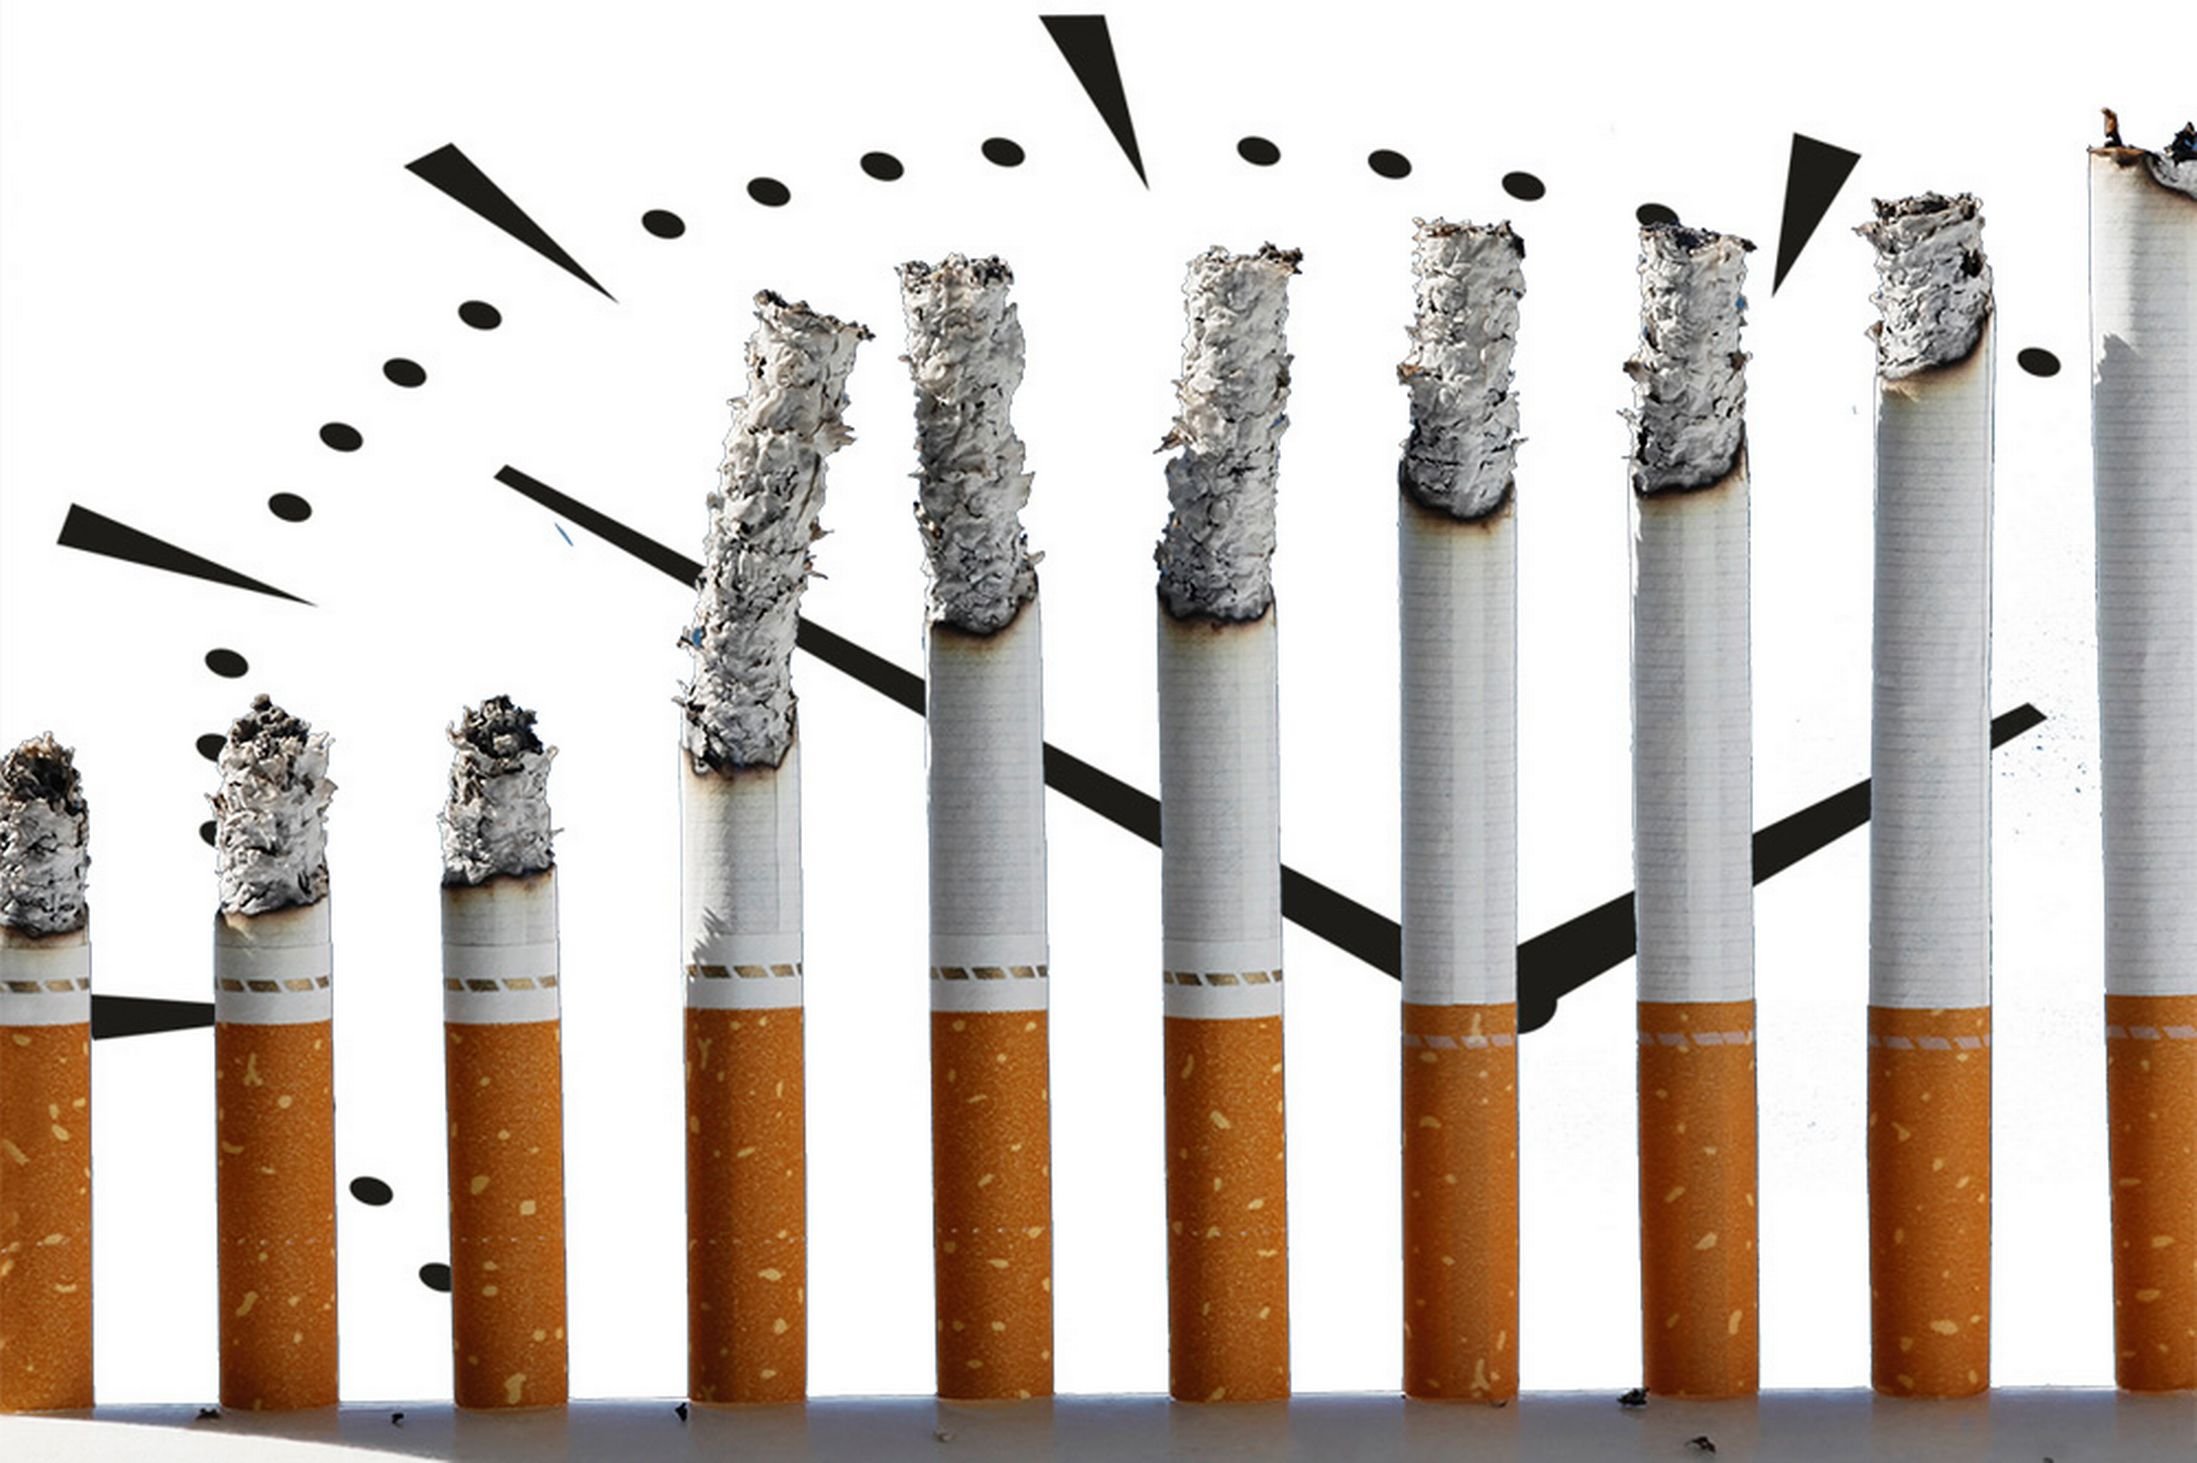 Курение во время поста. Сигара в кирпичах. Обои с сигаретами. Релакс тайм обои сигареты. Обои сигареты доллары.